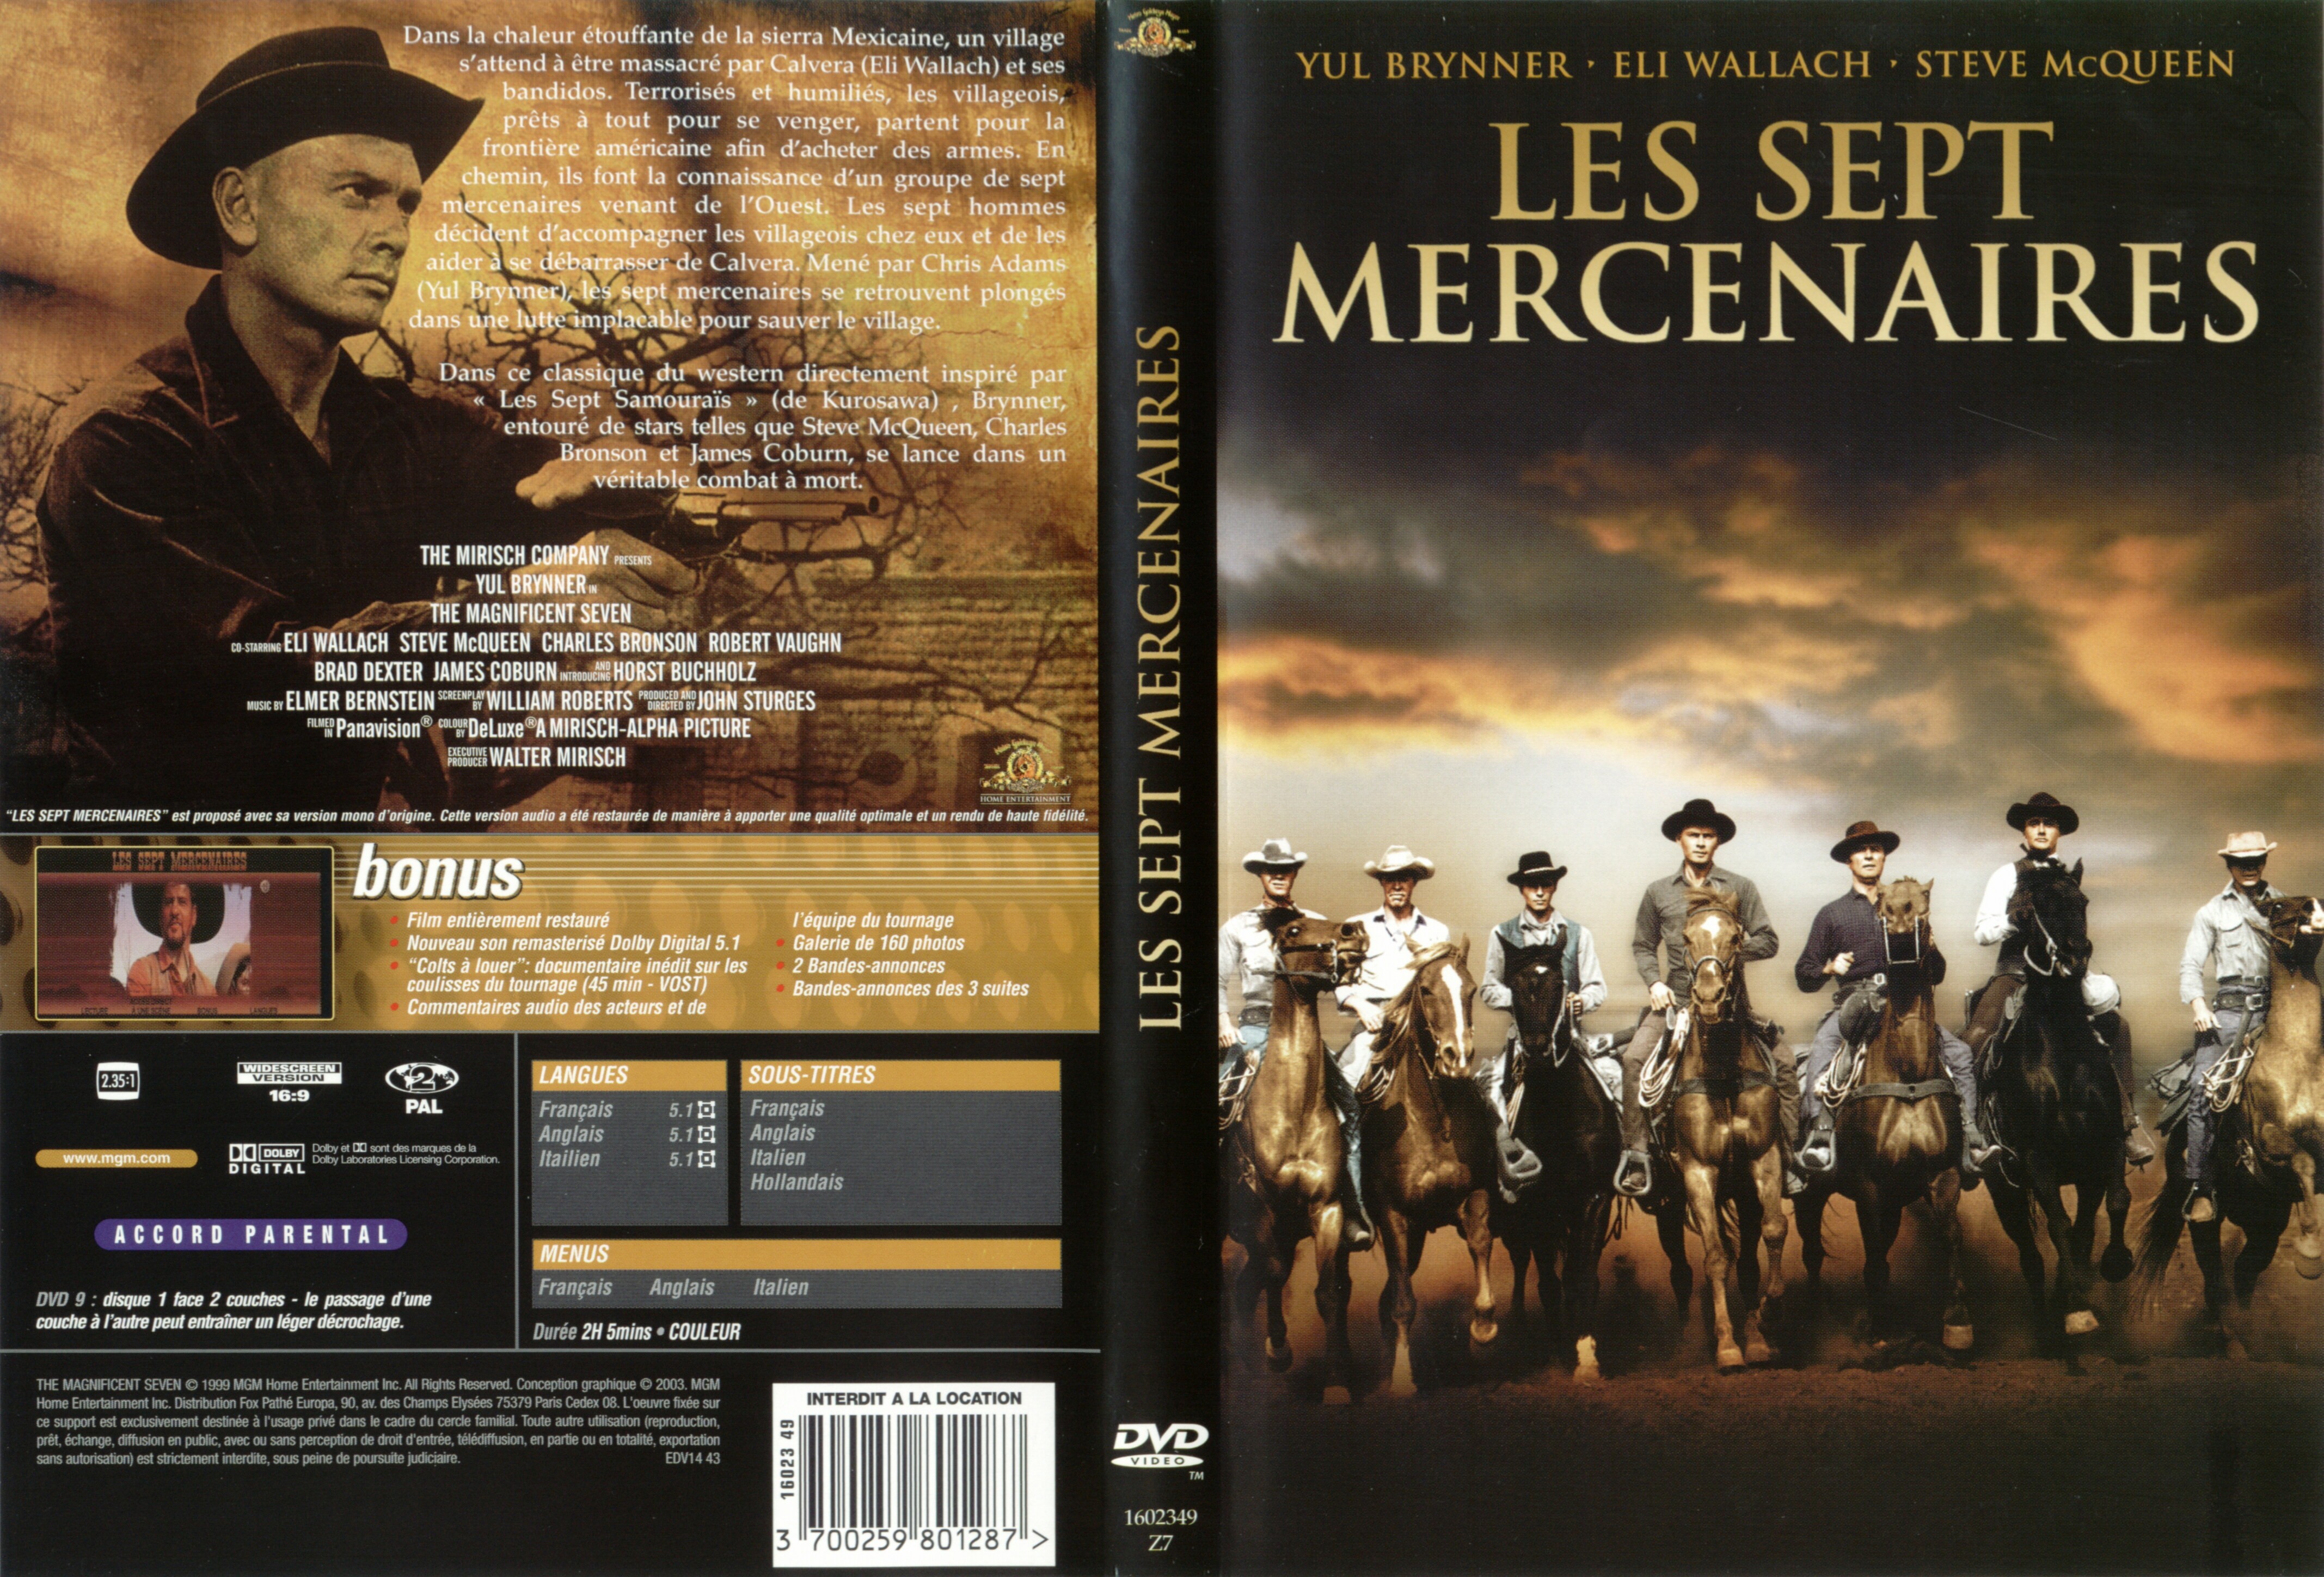 Jaquette DVD Les sept mercenaires v2